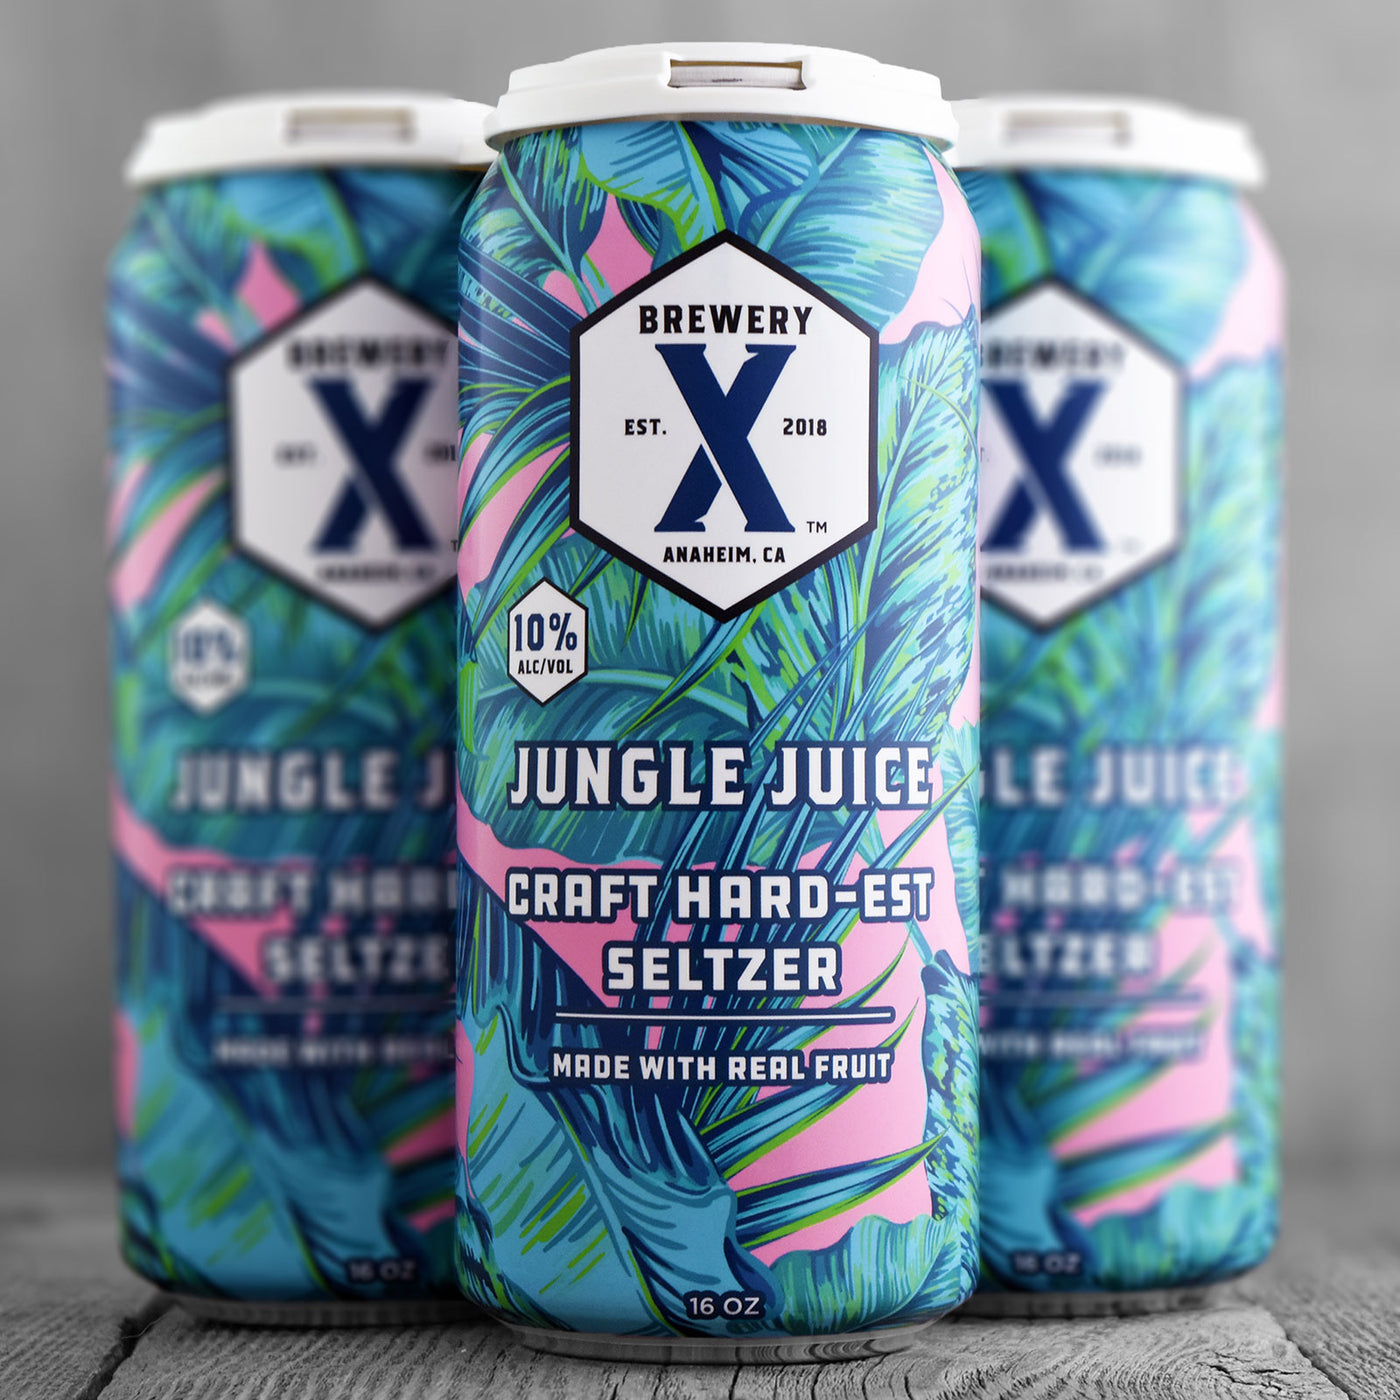 Brewery X Hard-est Seltzer Jungle Juice